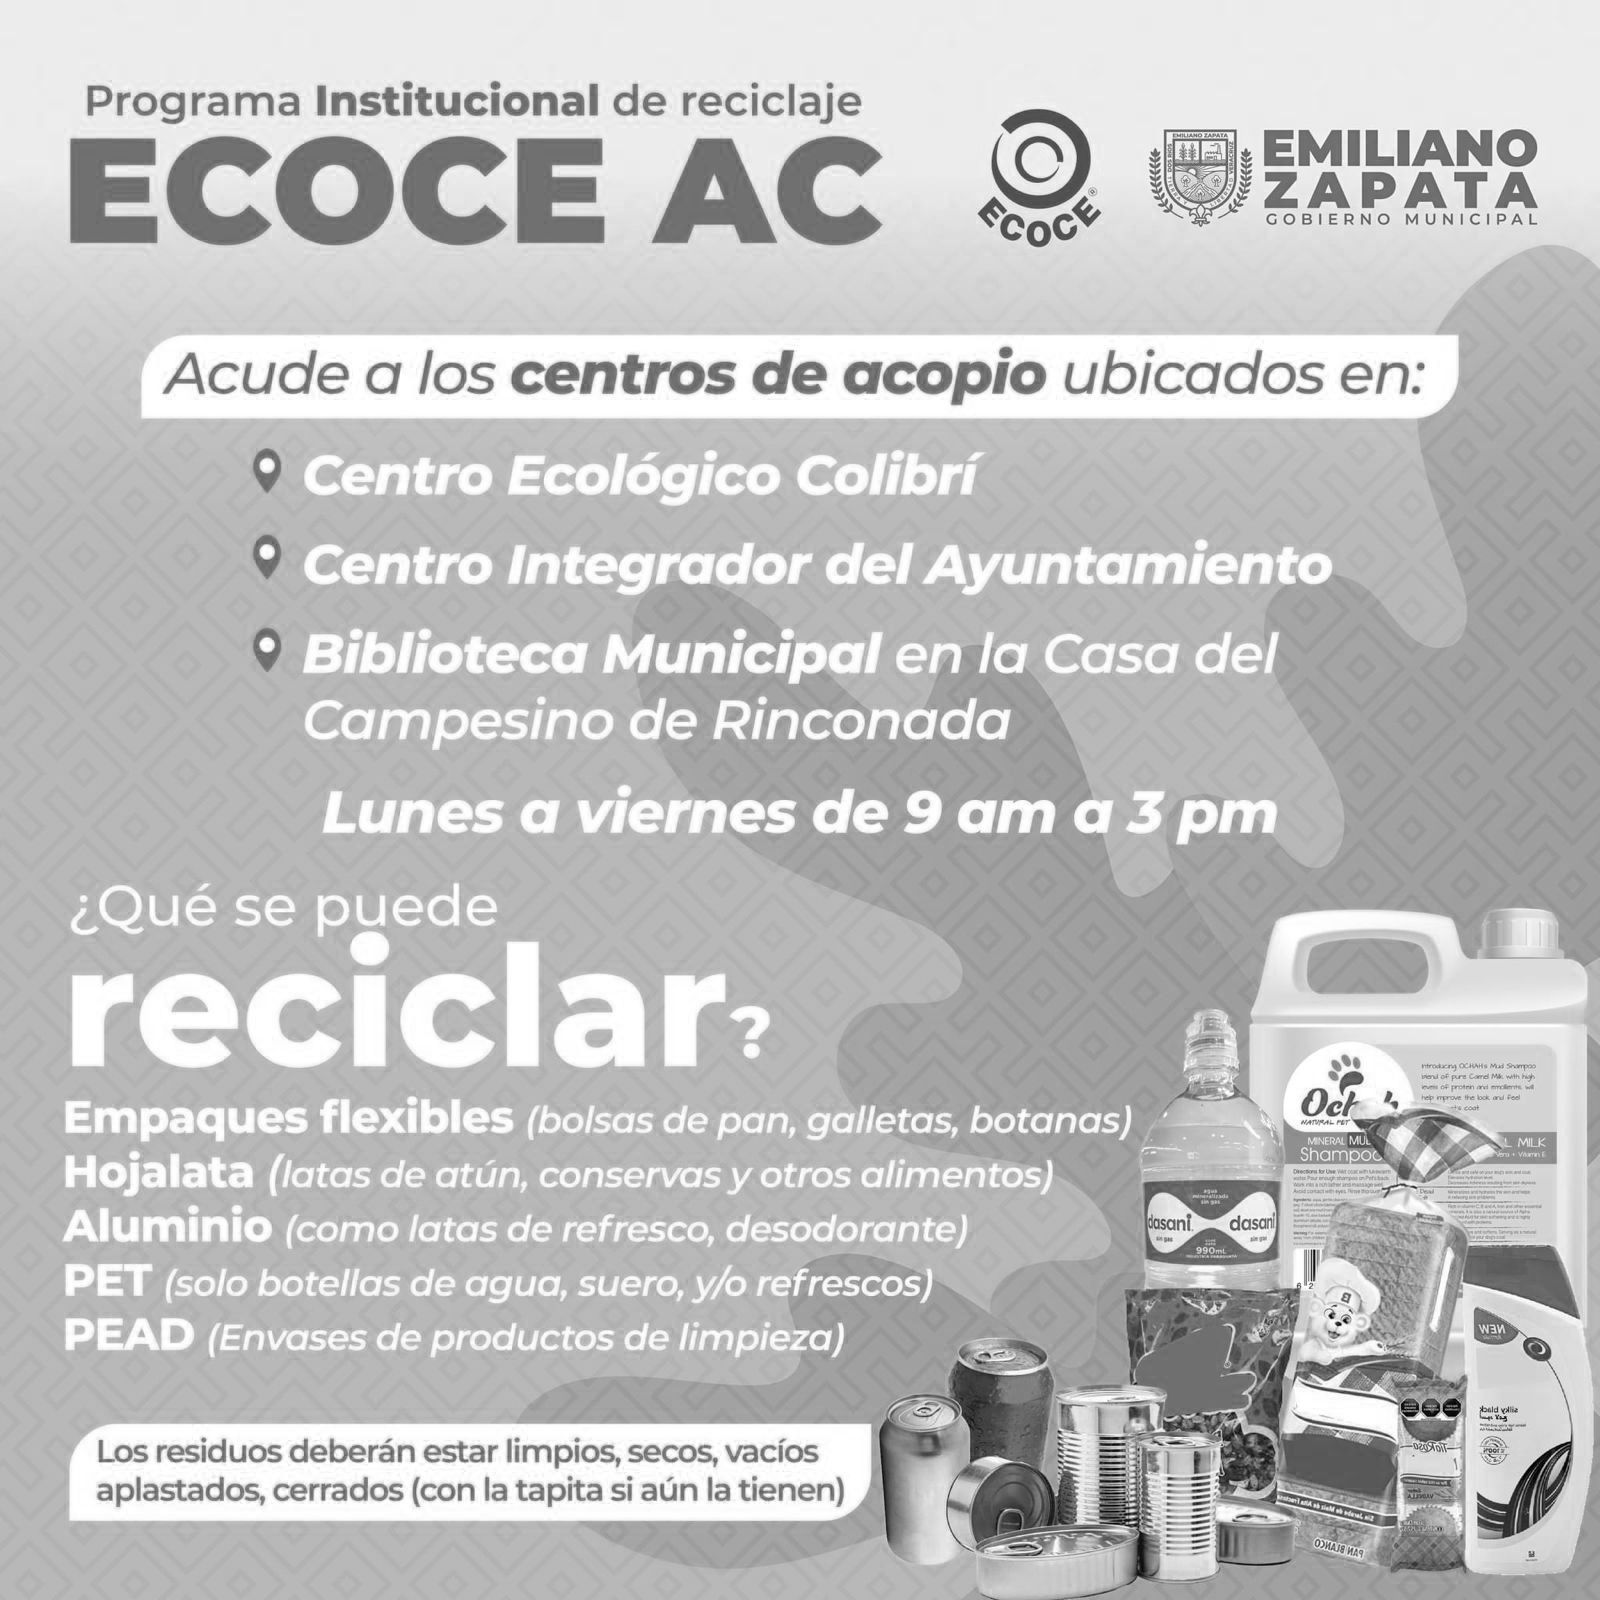 Participa en el Programa de Reciclaje ECOCE AC en sedes de Emiliano Zapata